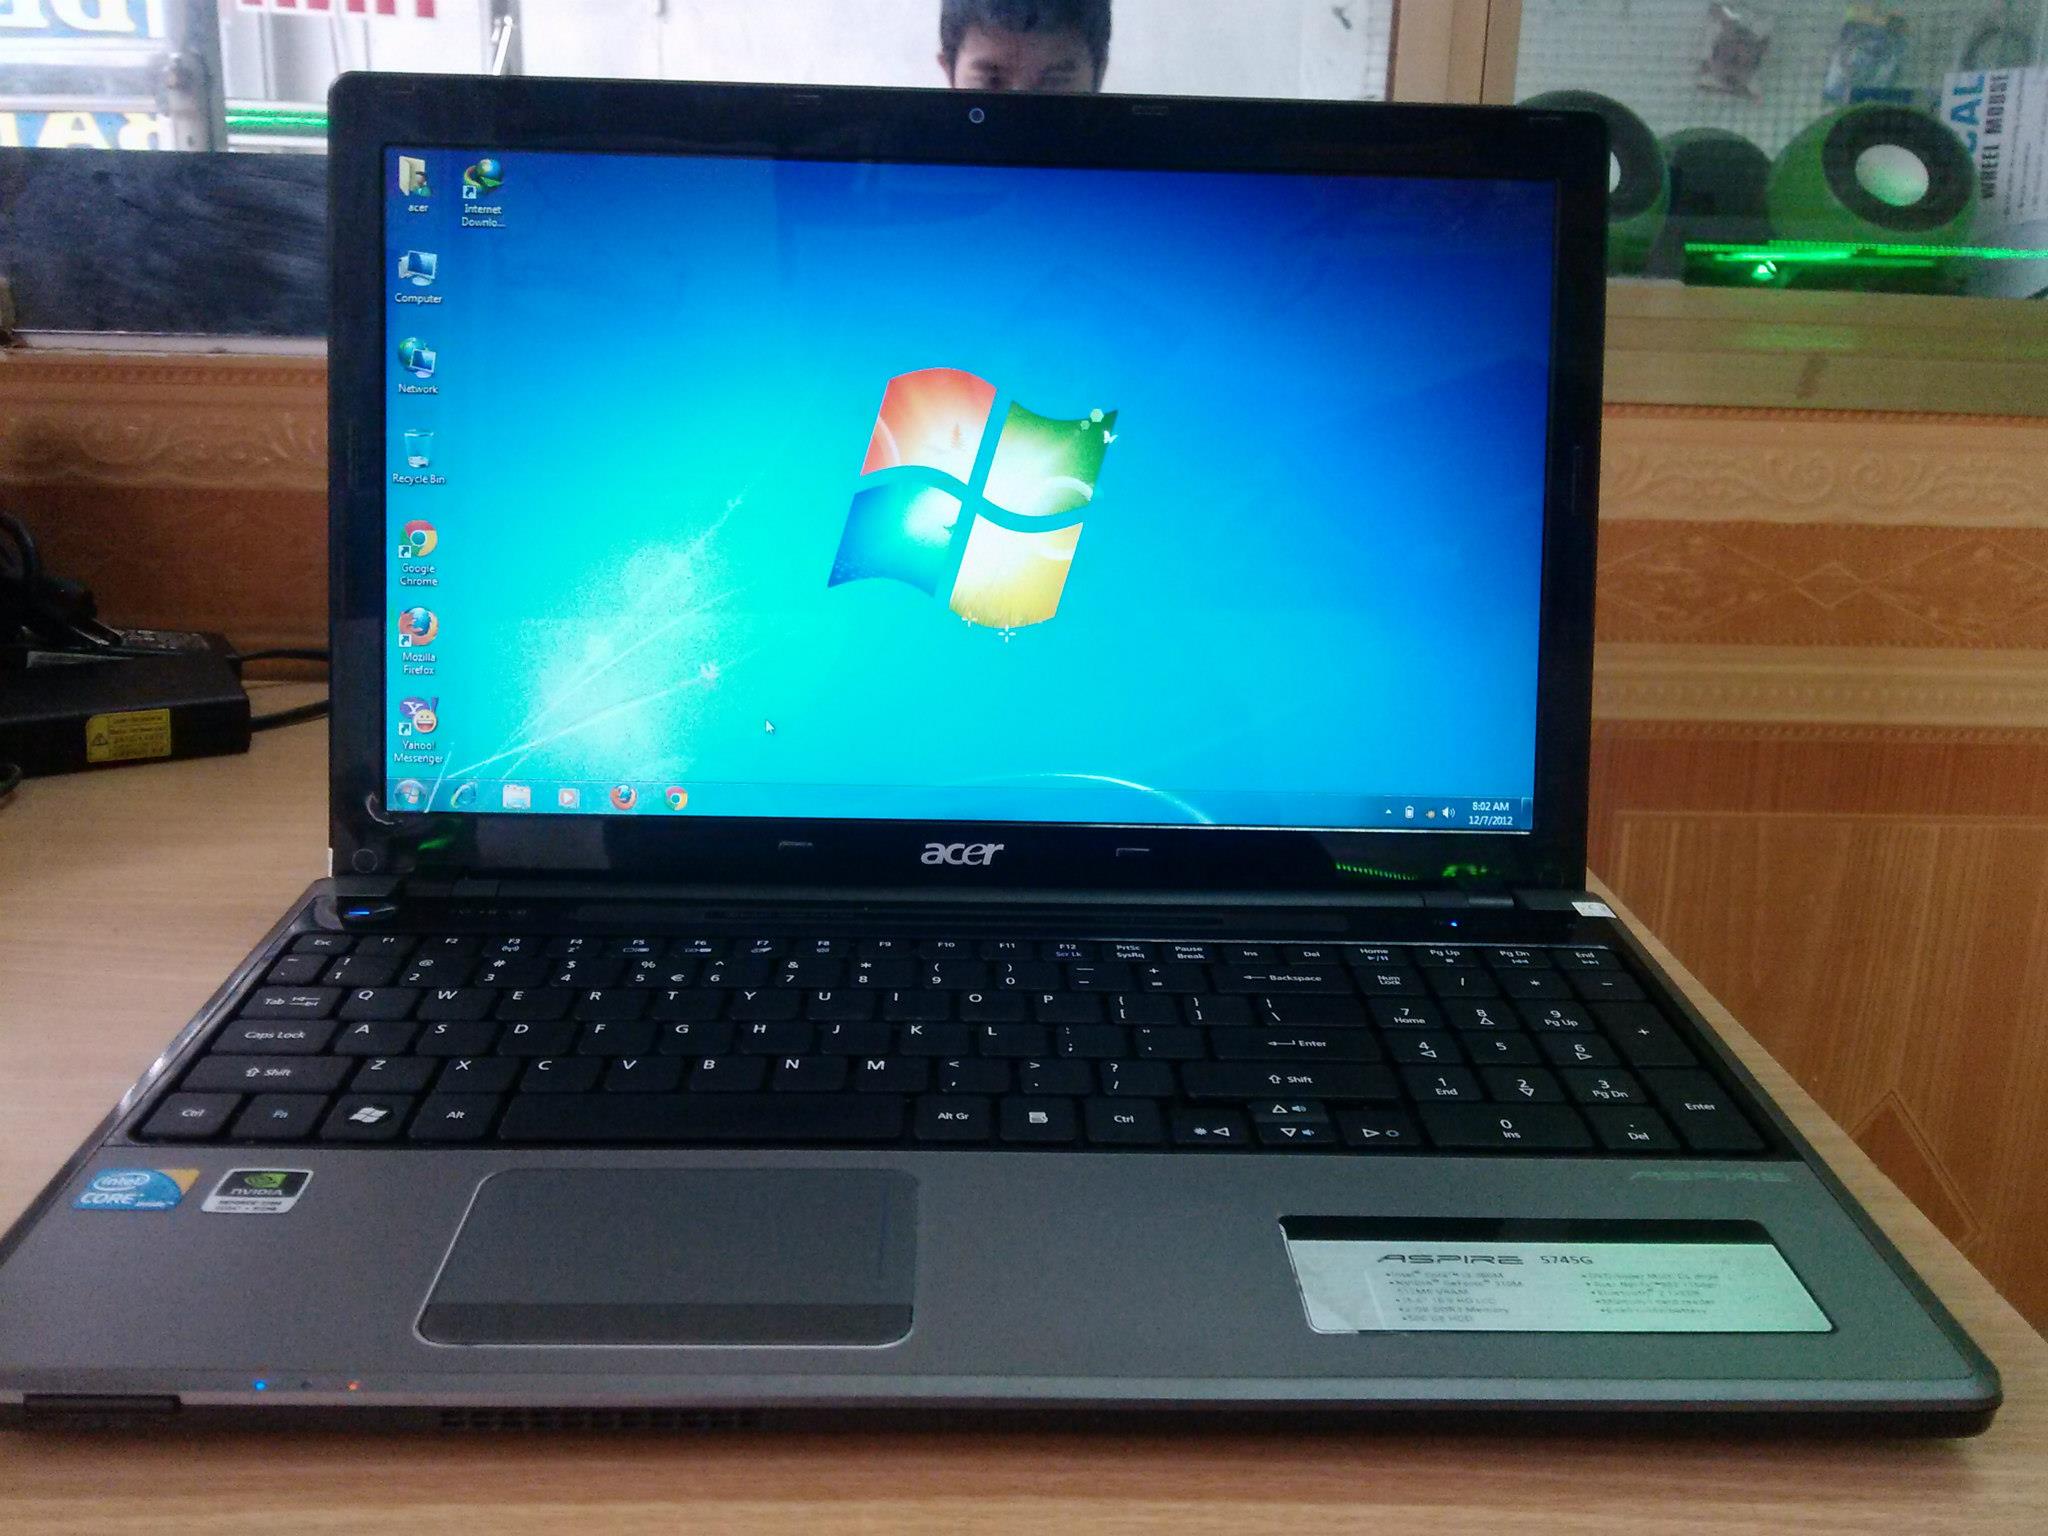 Bán laptop cũ Acer 5745G giá rẻ tại Hà Nội